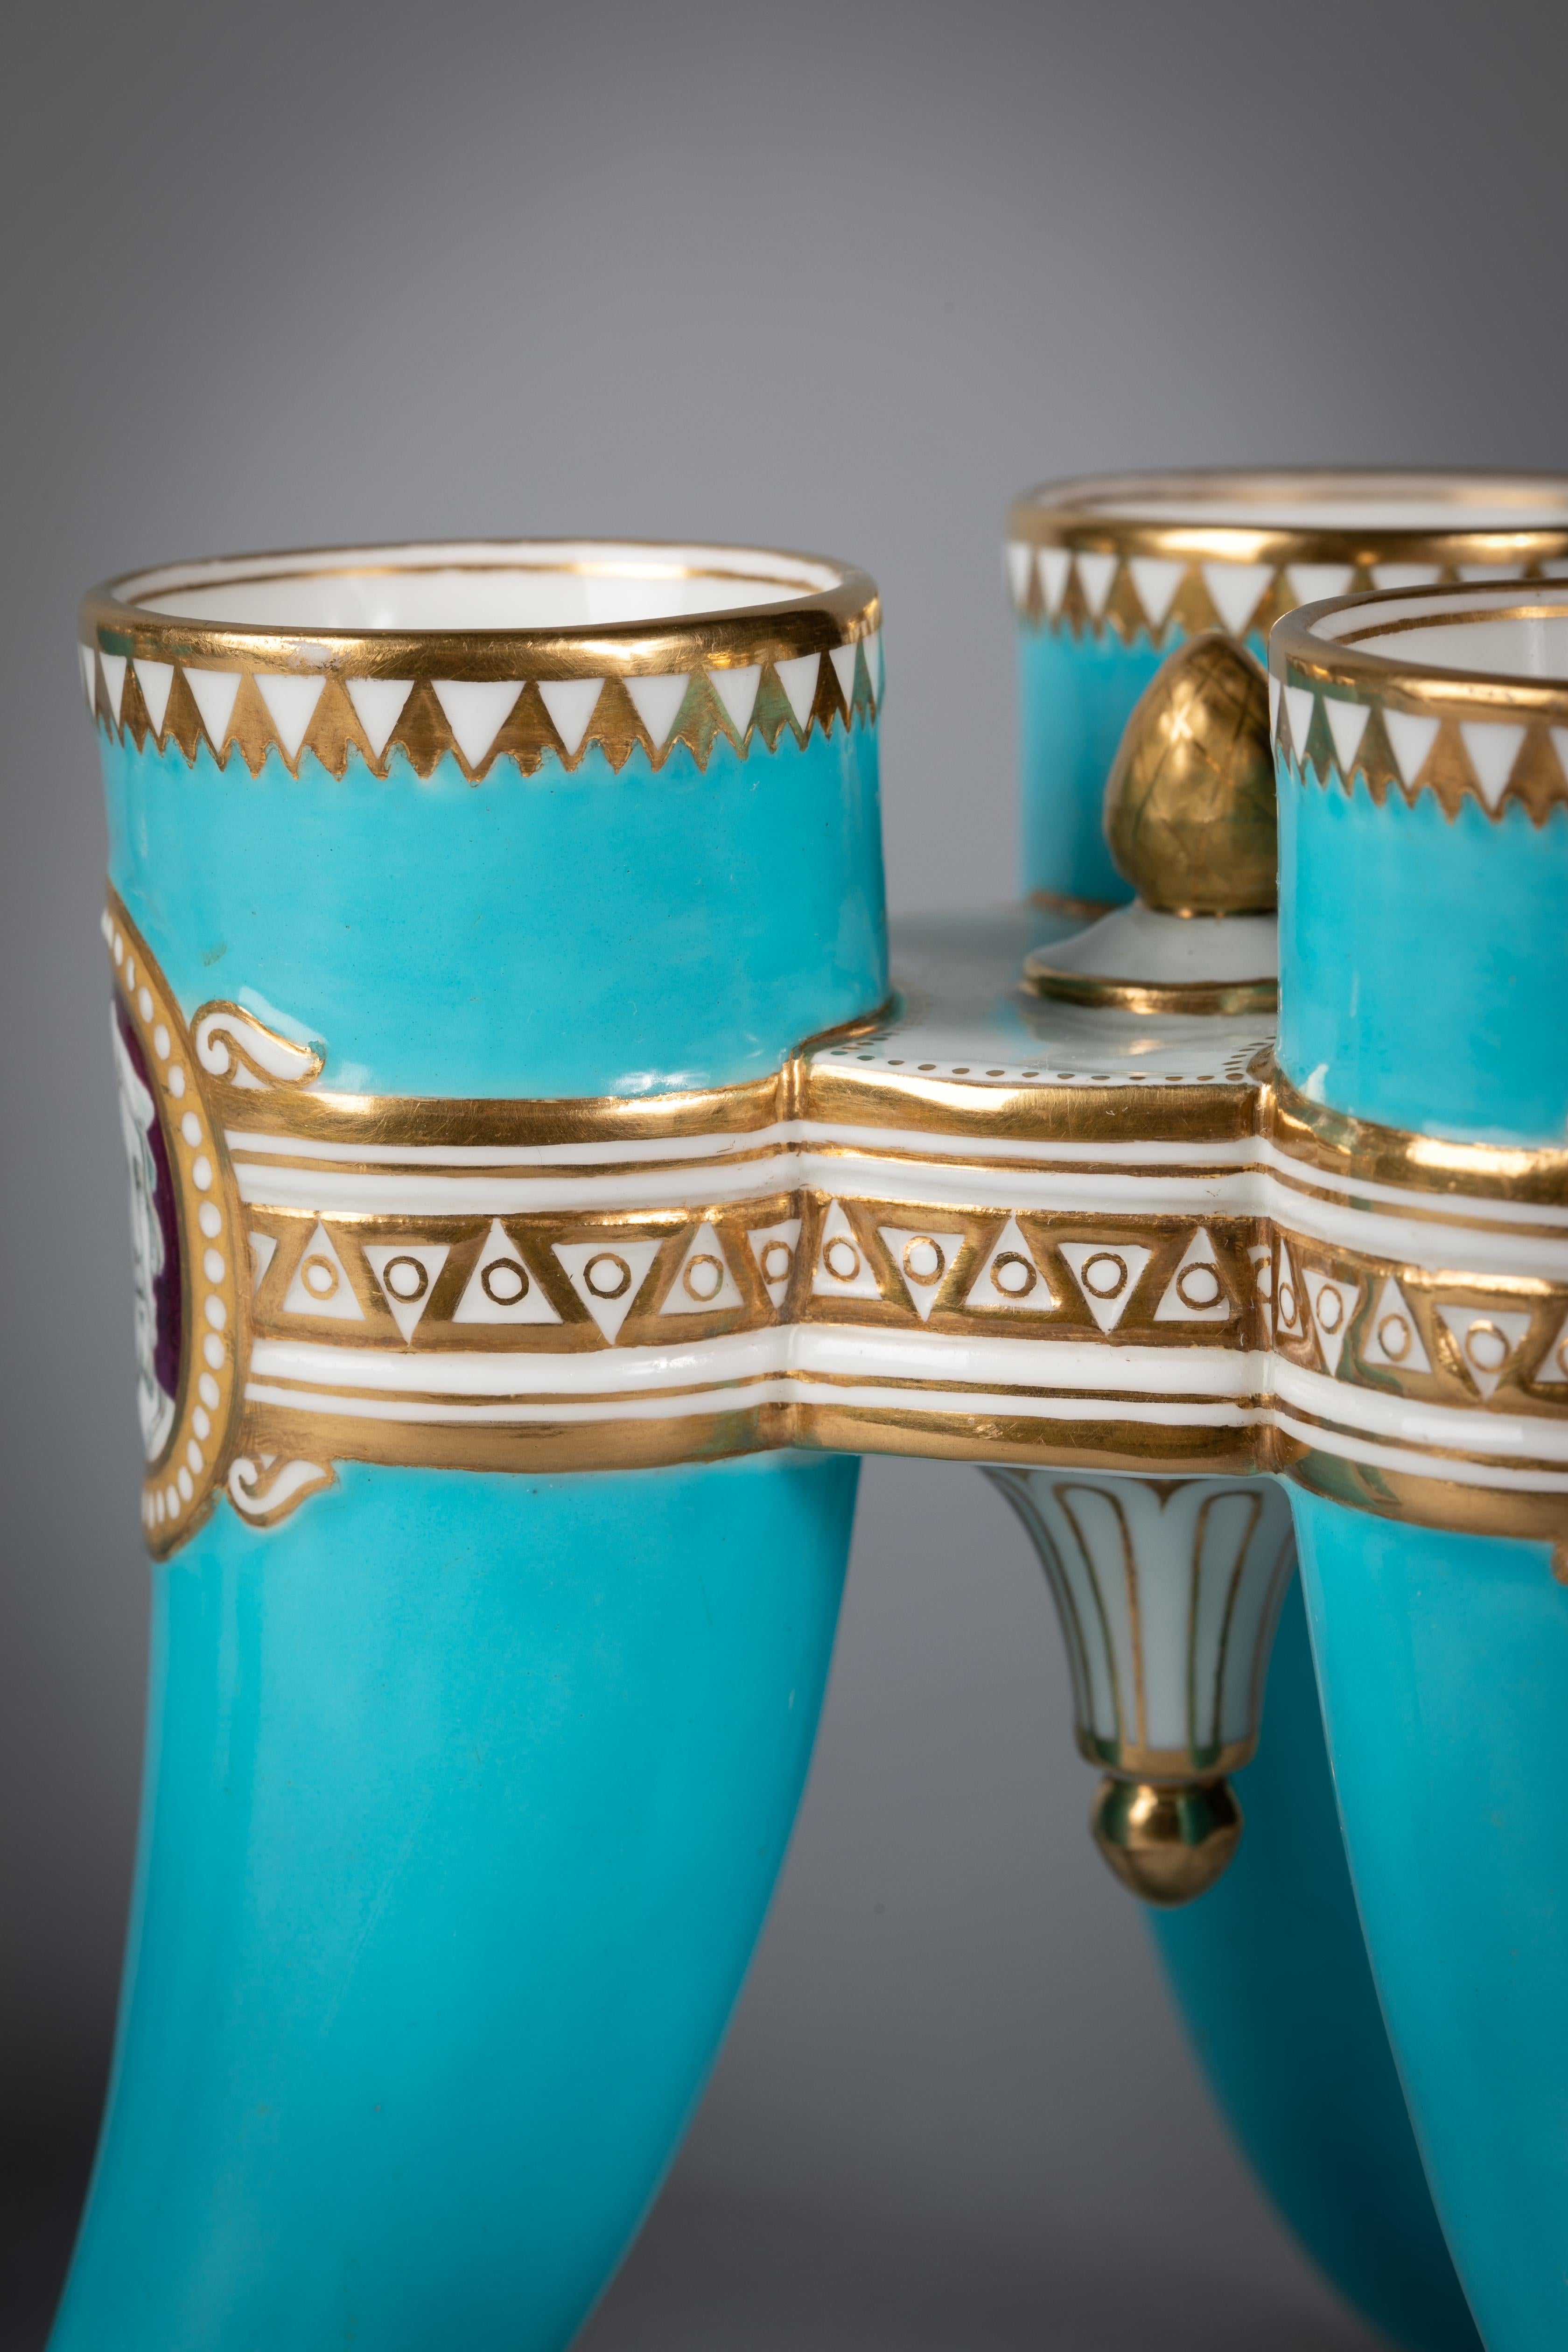 Paar dreifüßige Vasen aus englischem Porzellan mit türkisfarbenem Grund, Minton, datiert 1865.

Jedes hornförmige Bein mit einer anderen Kameenbüste. Minton beeindruckt.